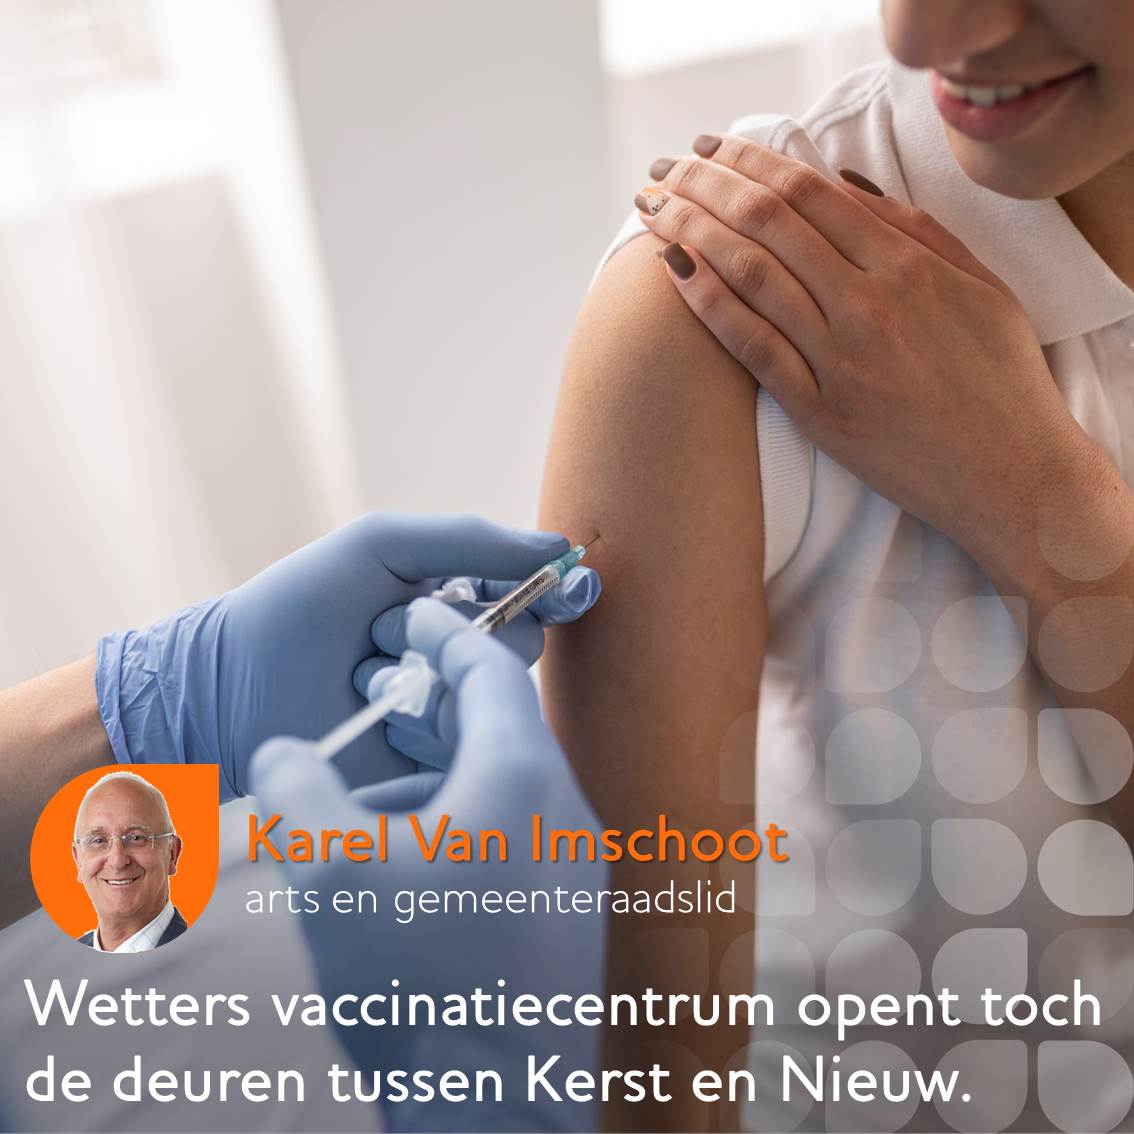 Wetters vaccinatiecentrum open tussen Kerst en Nieuw